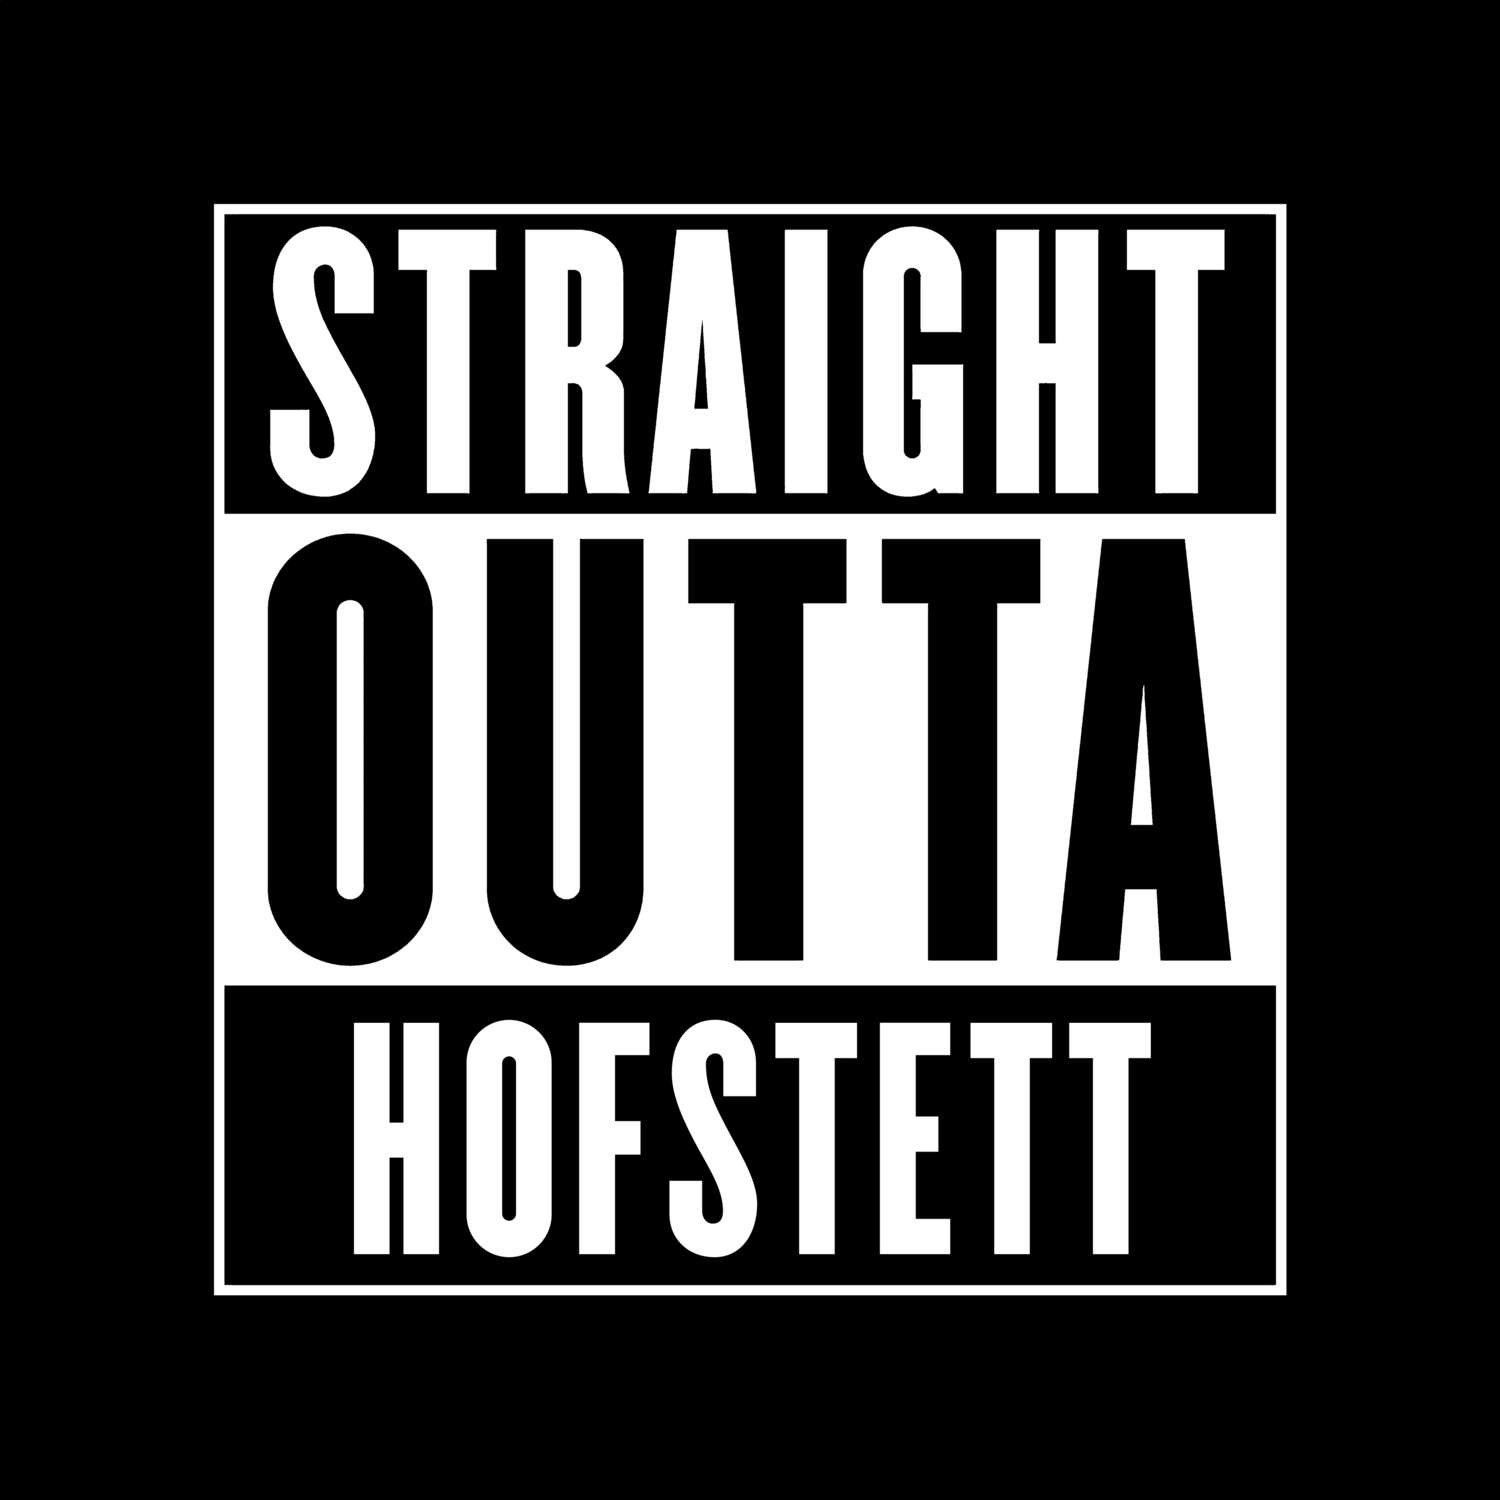 Hofstett T-Shirt »Straight Outta«